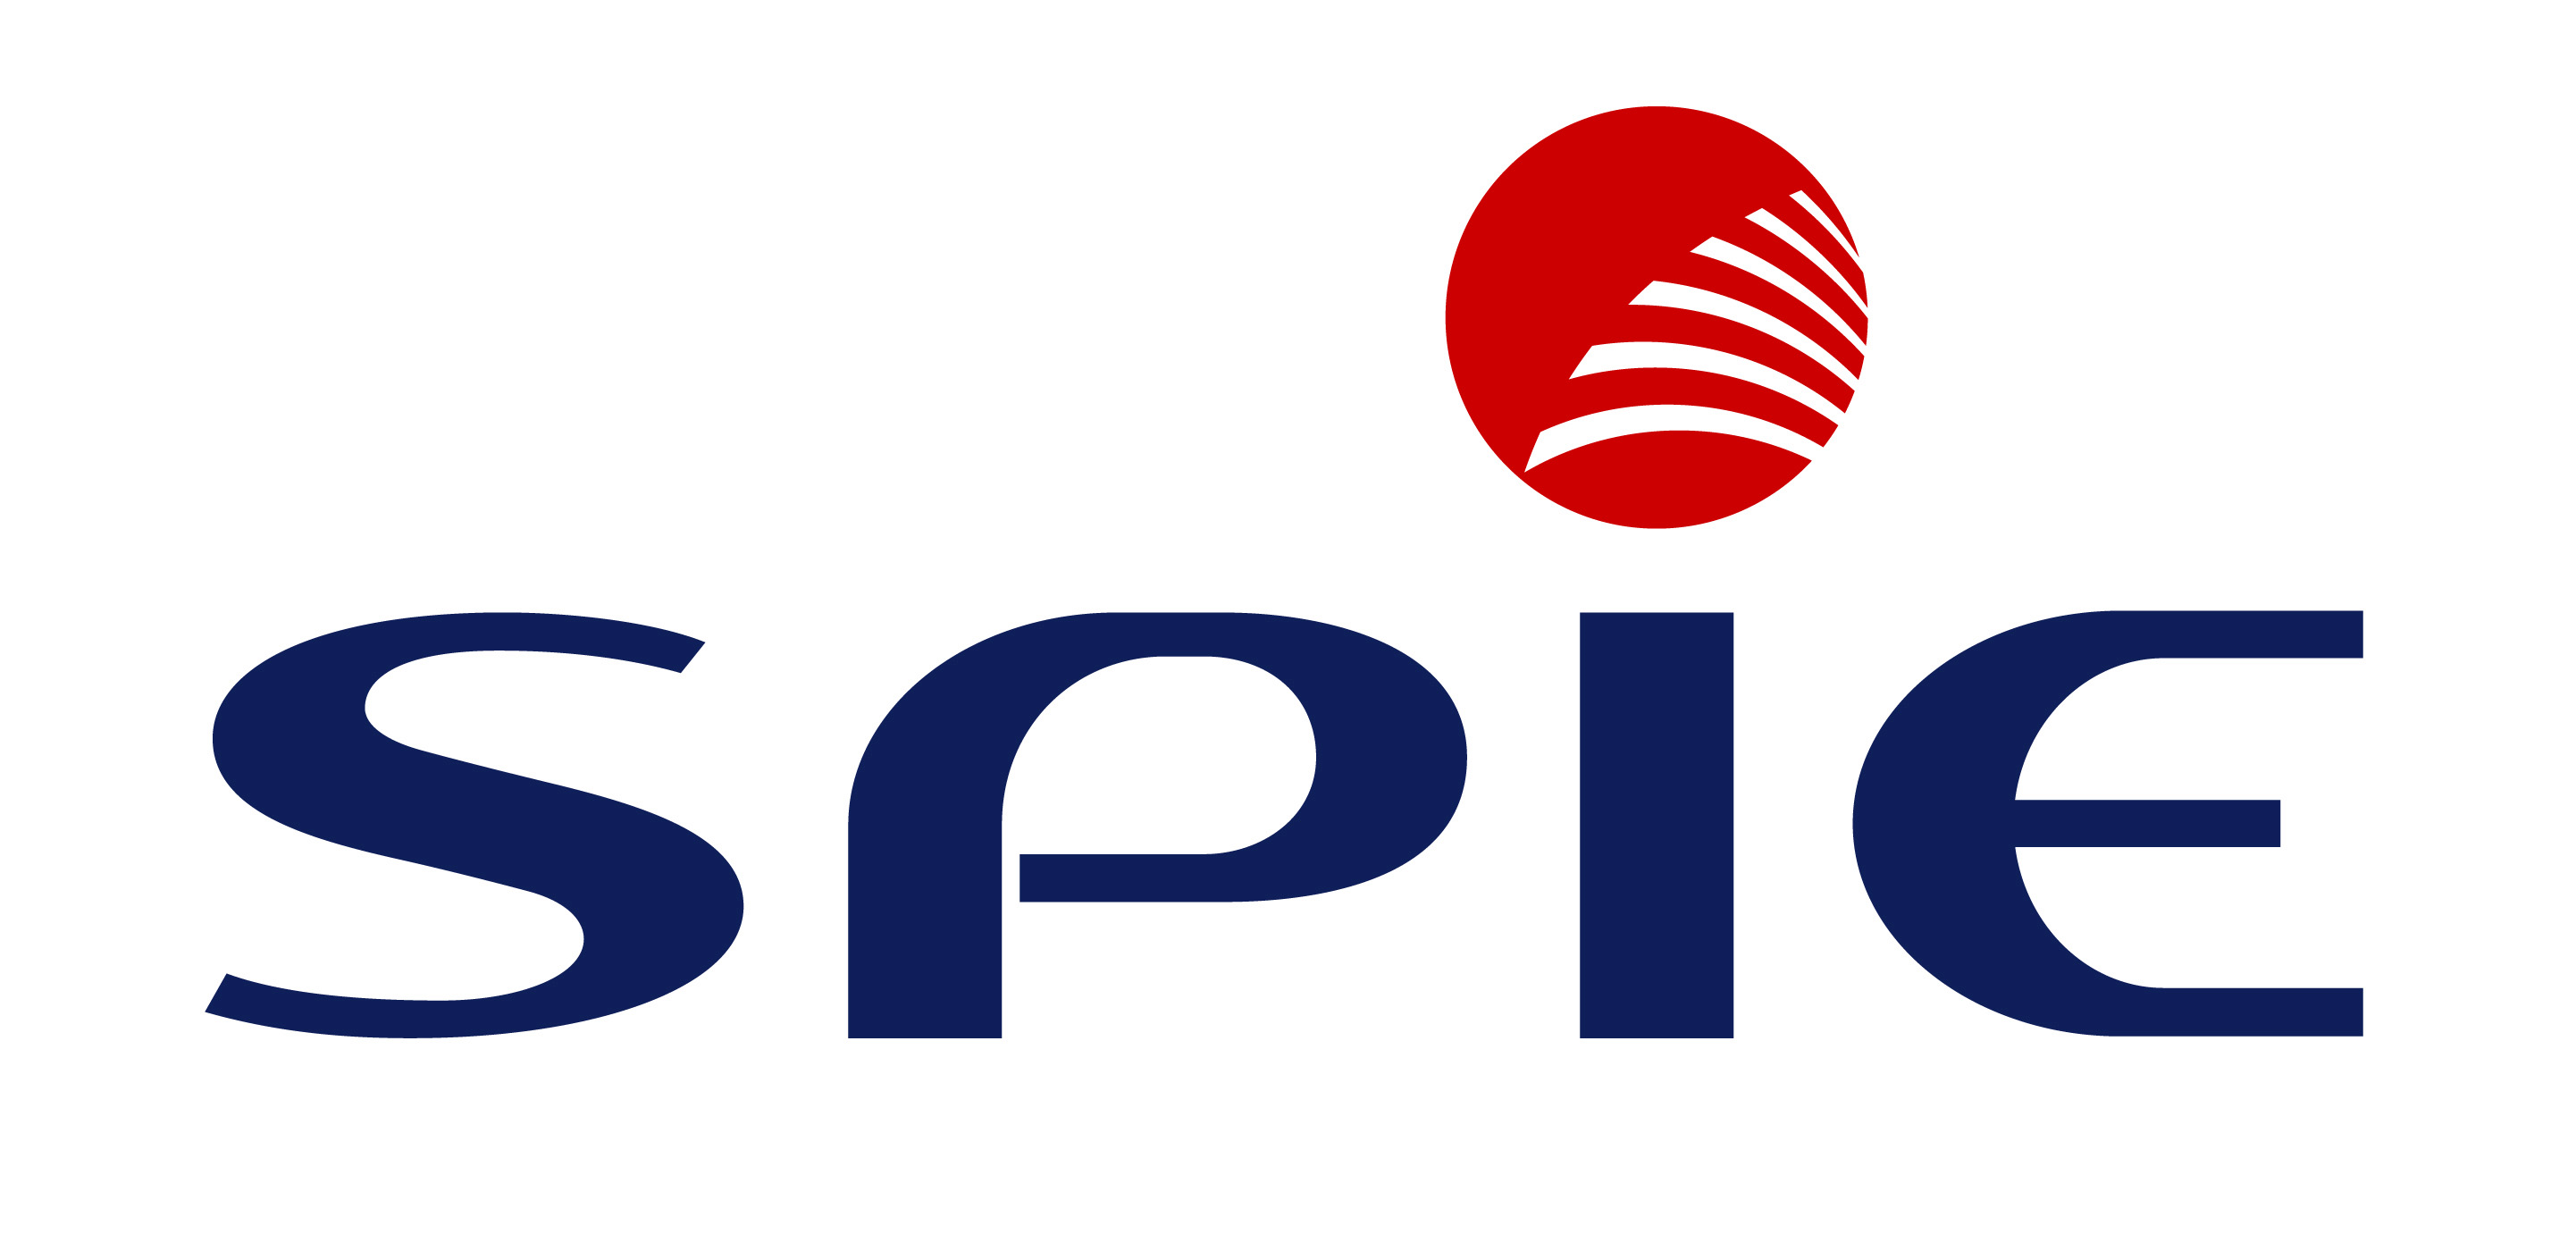 SPIE EPH GmbH